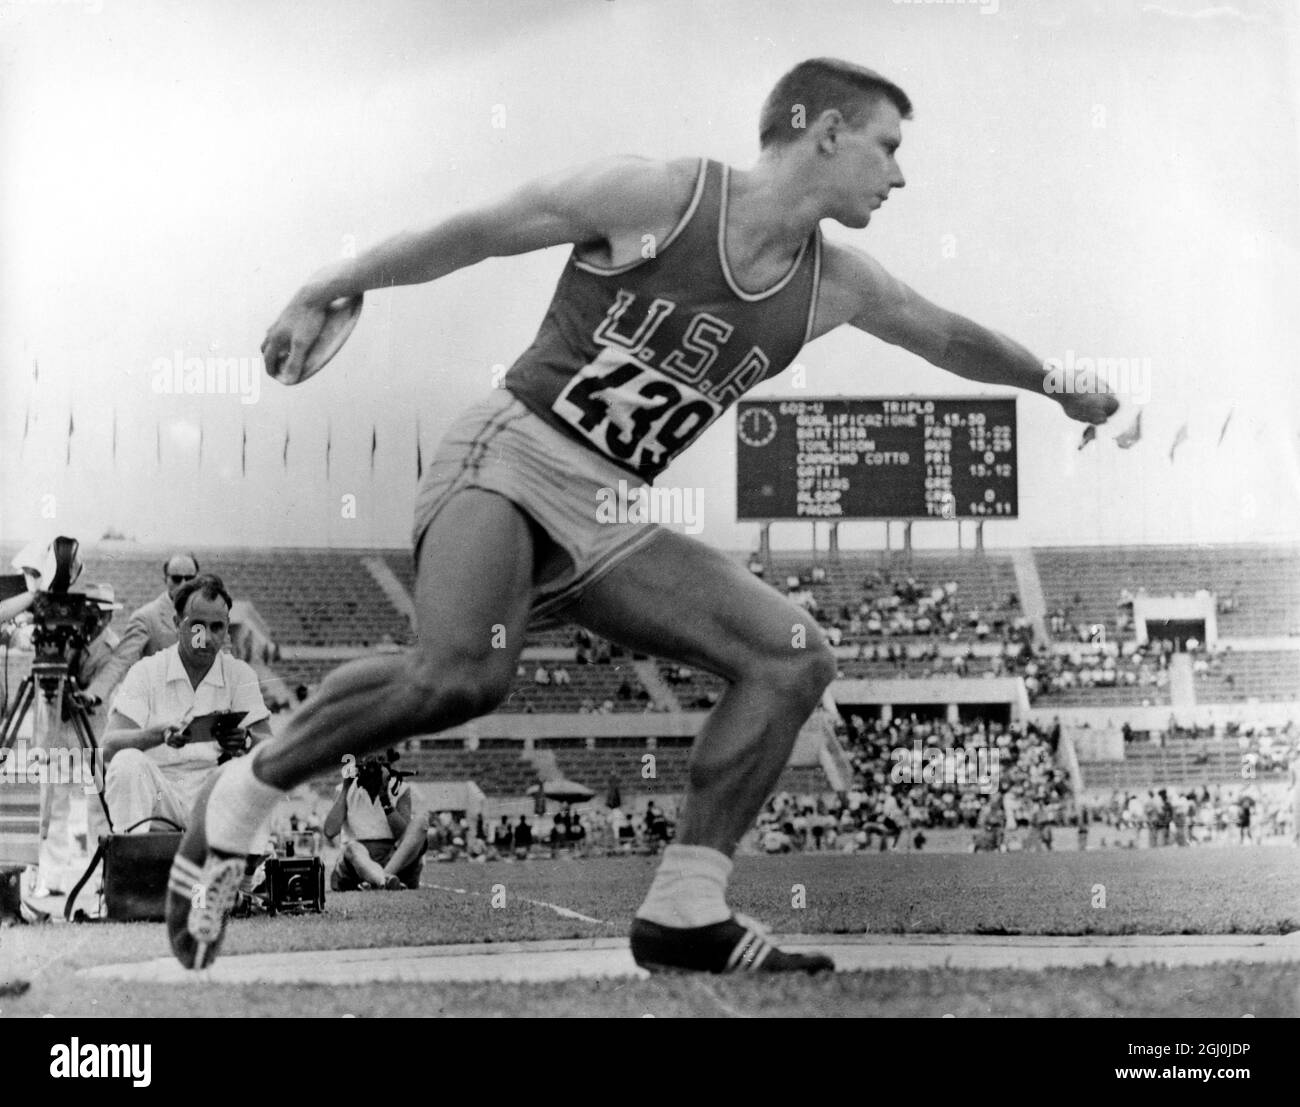 Der 24-jährige Al Oerter aus den Vereinigten Staaten, der in der Qualifikationsrunde des Diskus mit einem Wurf von 191 Fuß 8 1-4 Zoll den olympischen Rekord brach. Am 7. August 1960 1960 gewann er die Goldmedaille bei den Olympischen Spielen in Rom Stockfoto